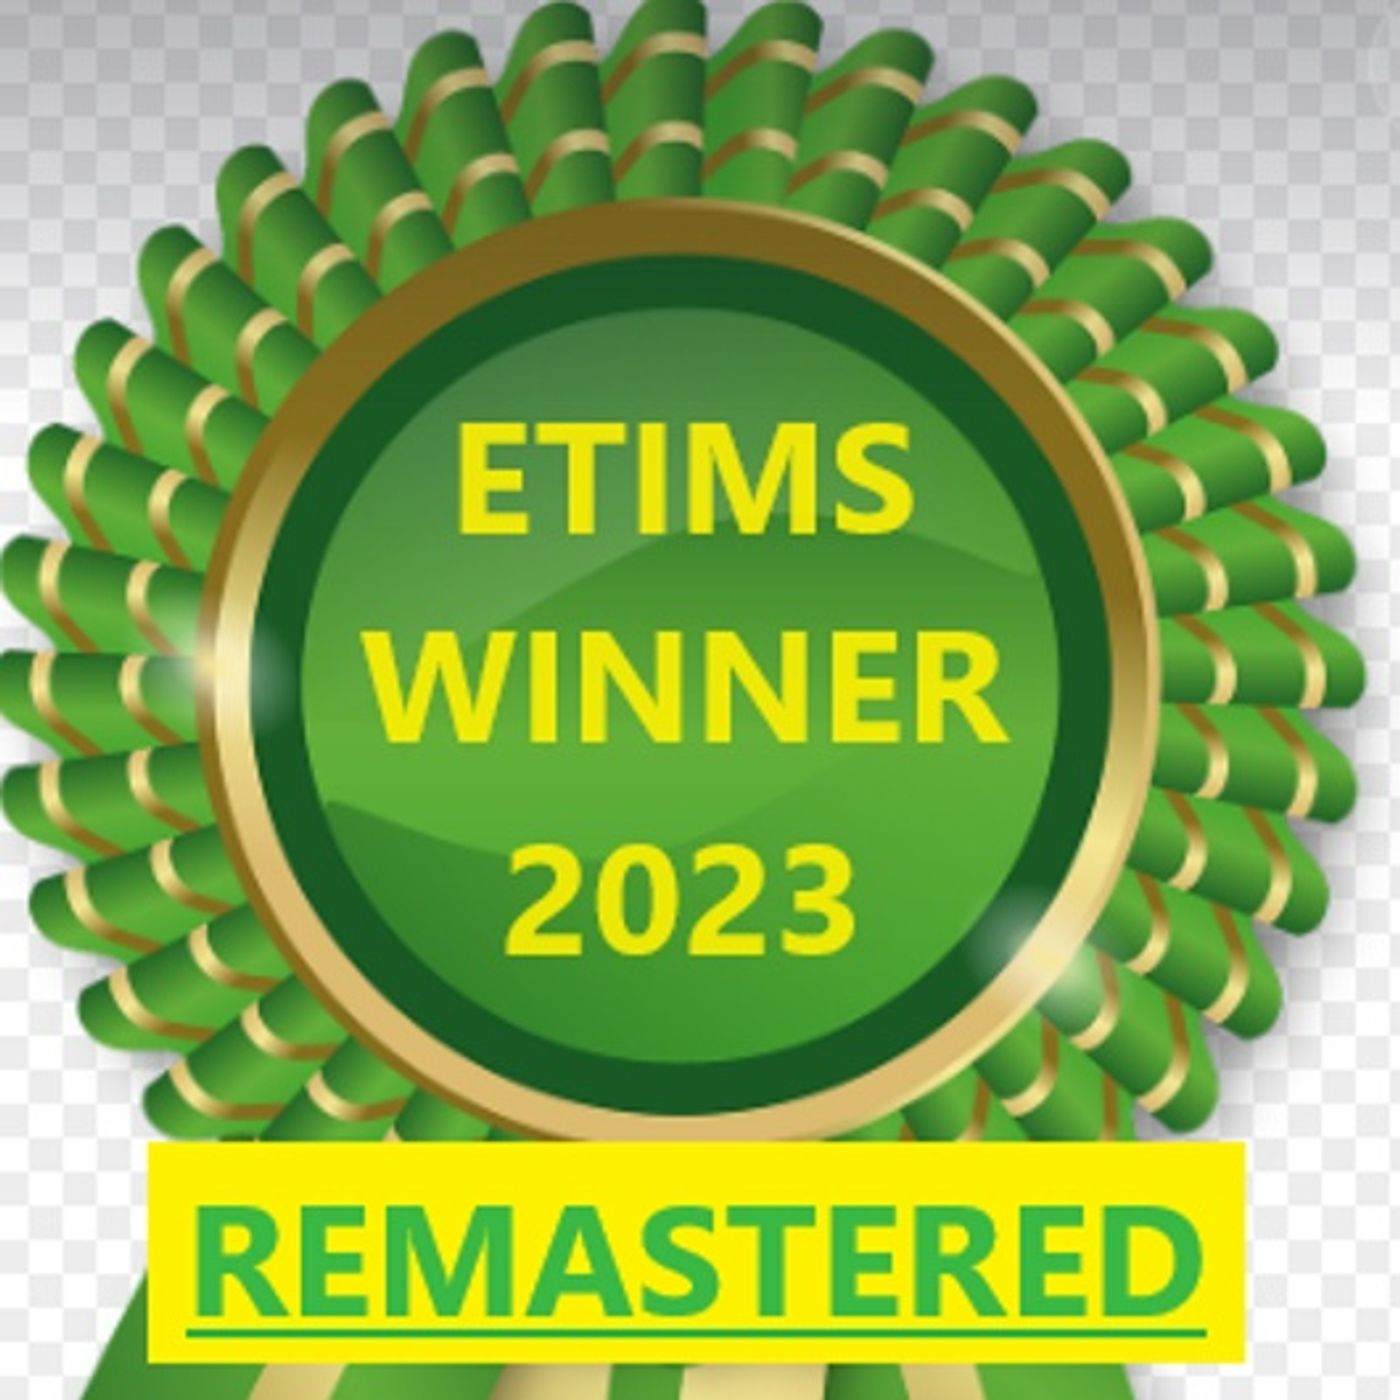 ETims_EOY_Awards_REMASTERED